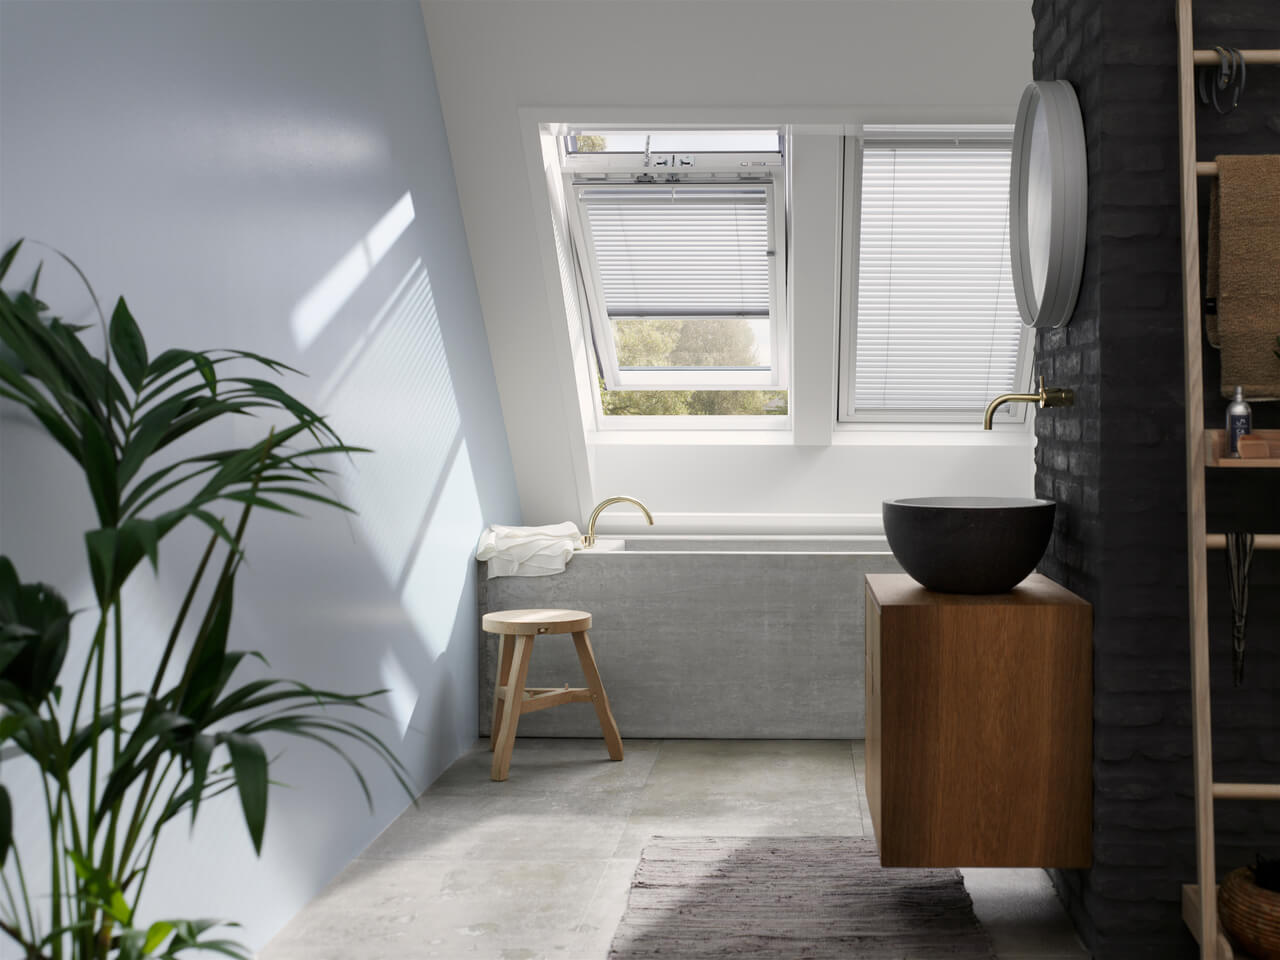 Salle de bain moderne avec fenêtre de toit VELUX, miroir rond et meuble-lavabo en bois.